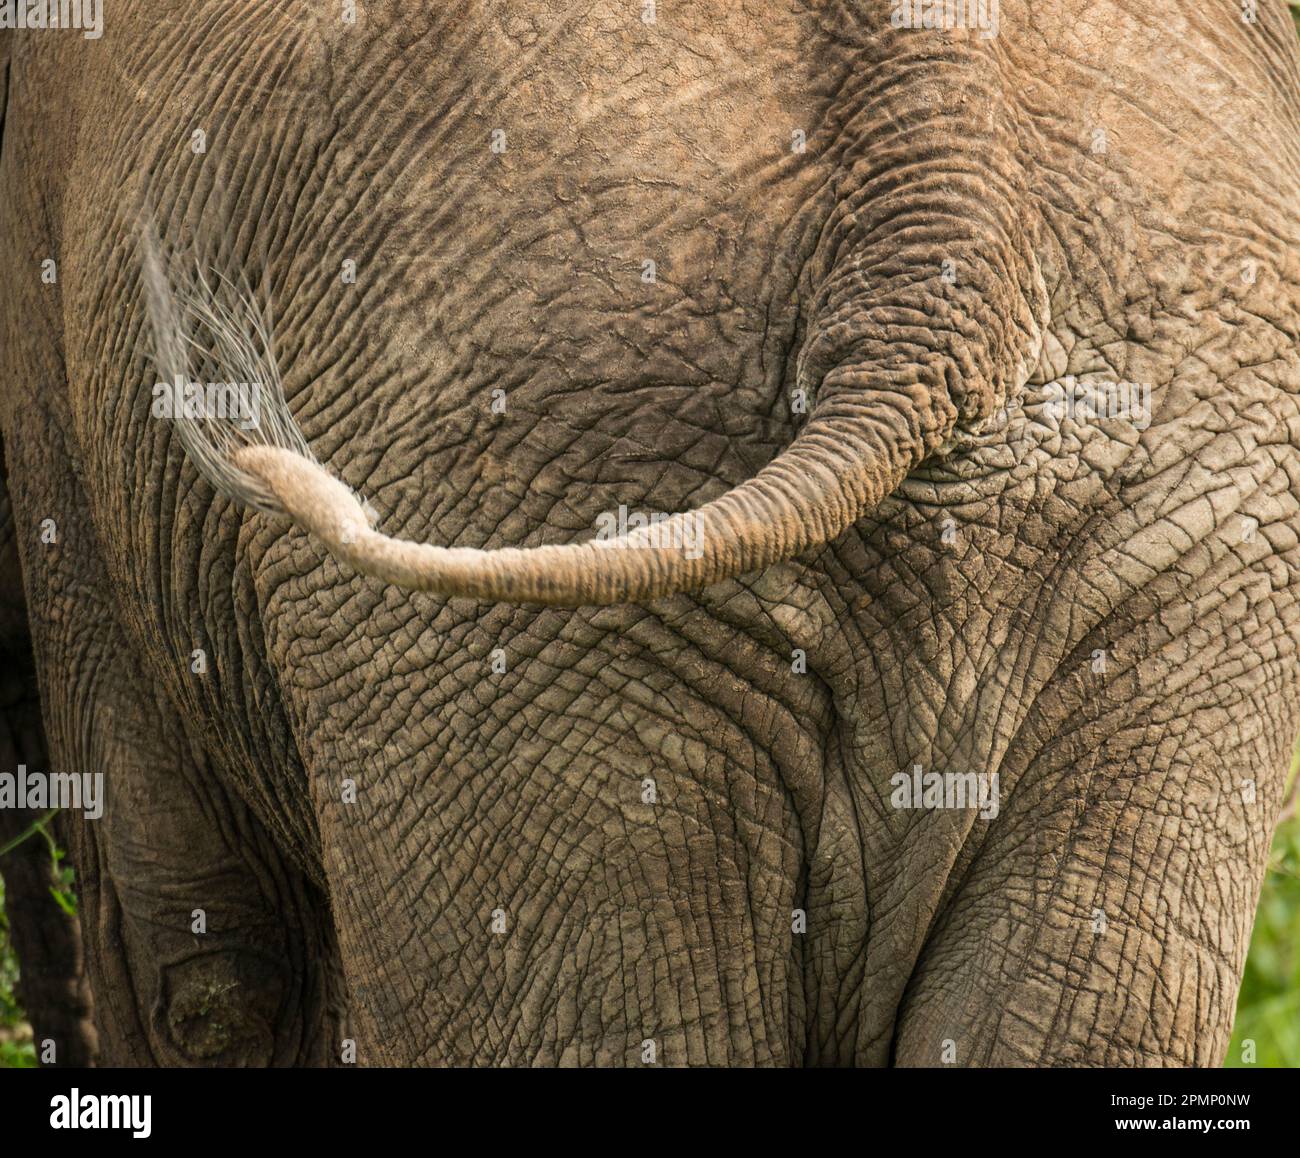 Close-up of an Elephant (Loxodonta africana) swishing its tail in Serengeti National Park, Tanzania; Tanzania Stock Photo